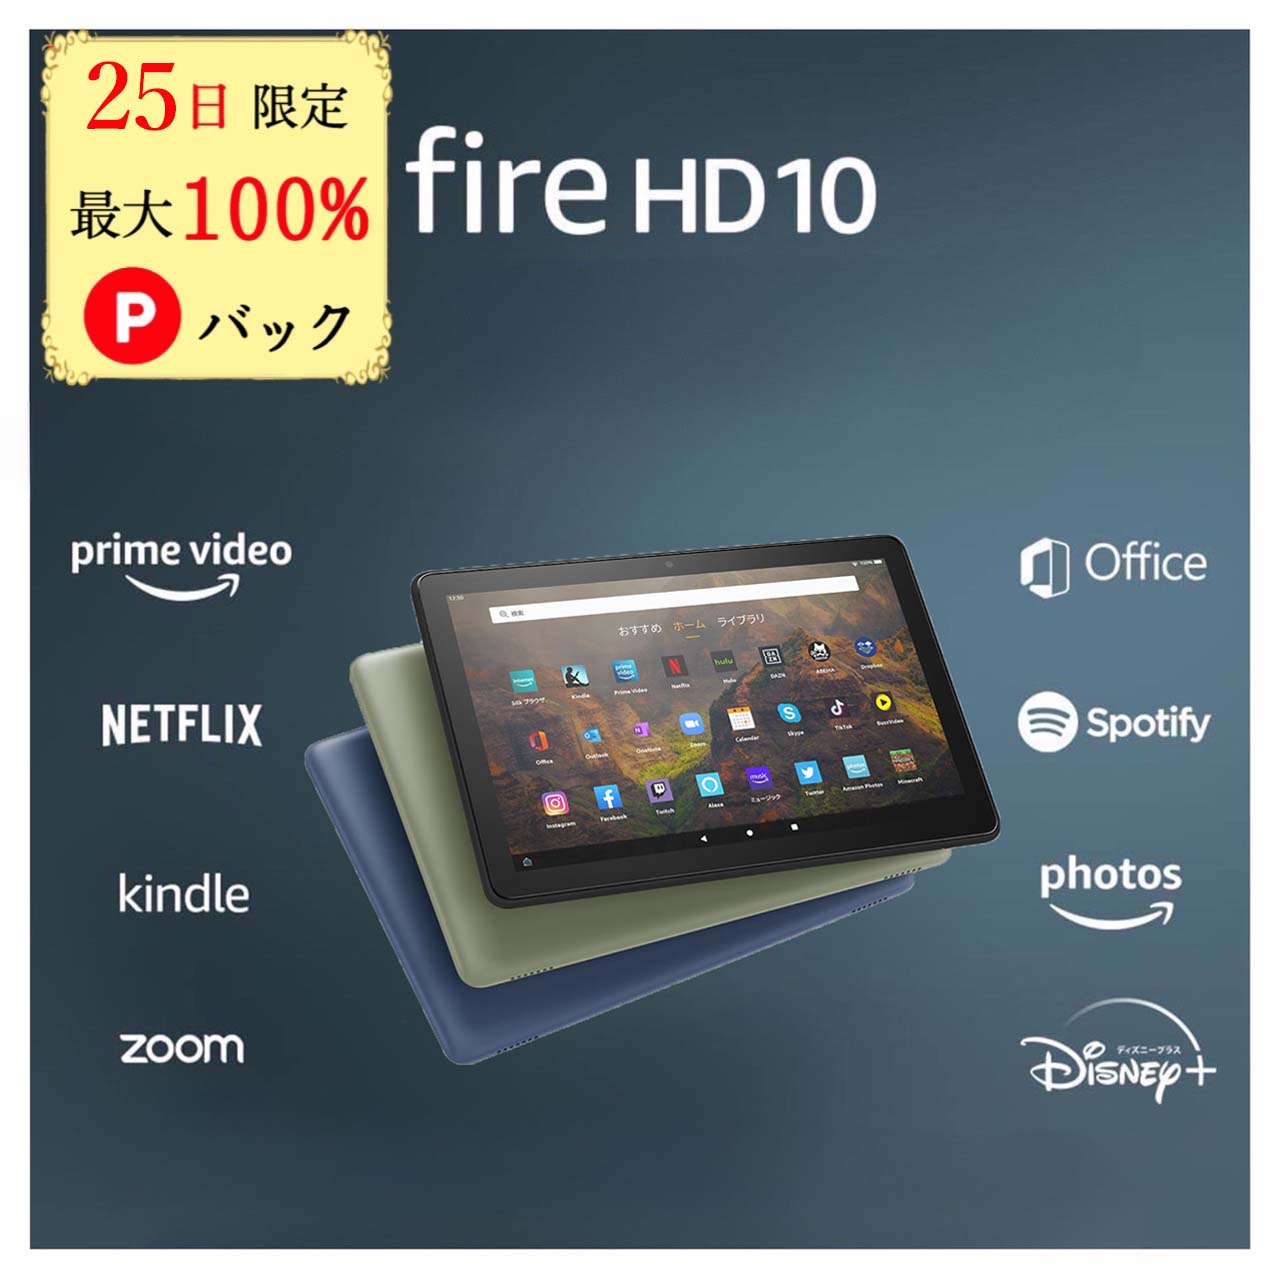 【25日限定 当選確率1/2 最大100%Pバック】 Fire HD 10 タブレット 32GB 64GB firehd10 アレクサ ブラック 新型 第13世代 アマゾン タブレット Amazon ファイヤ タブレット ファイア エイチデ…